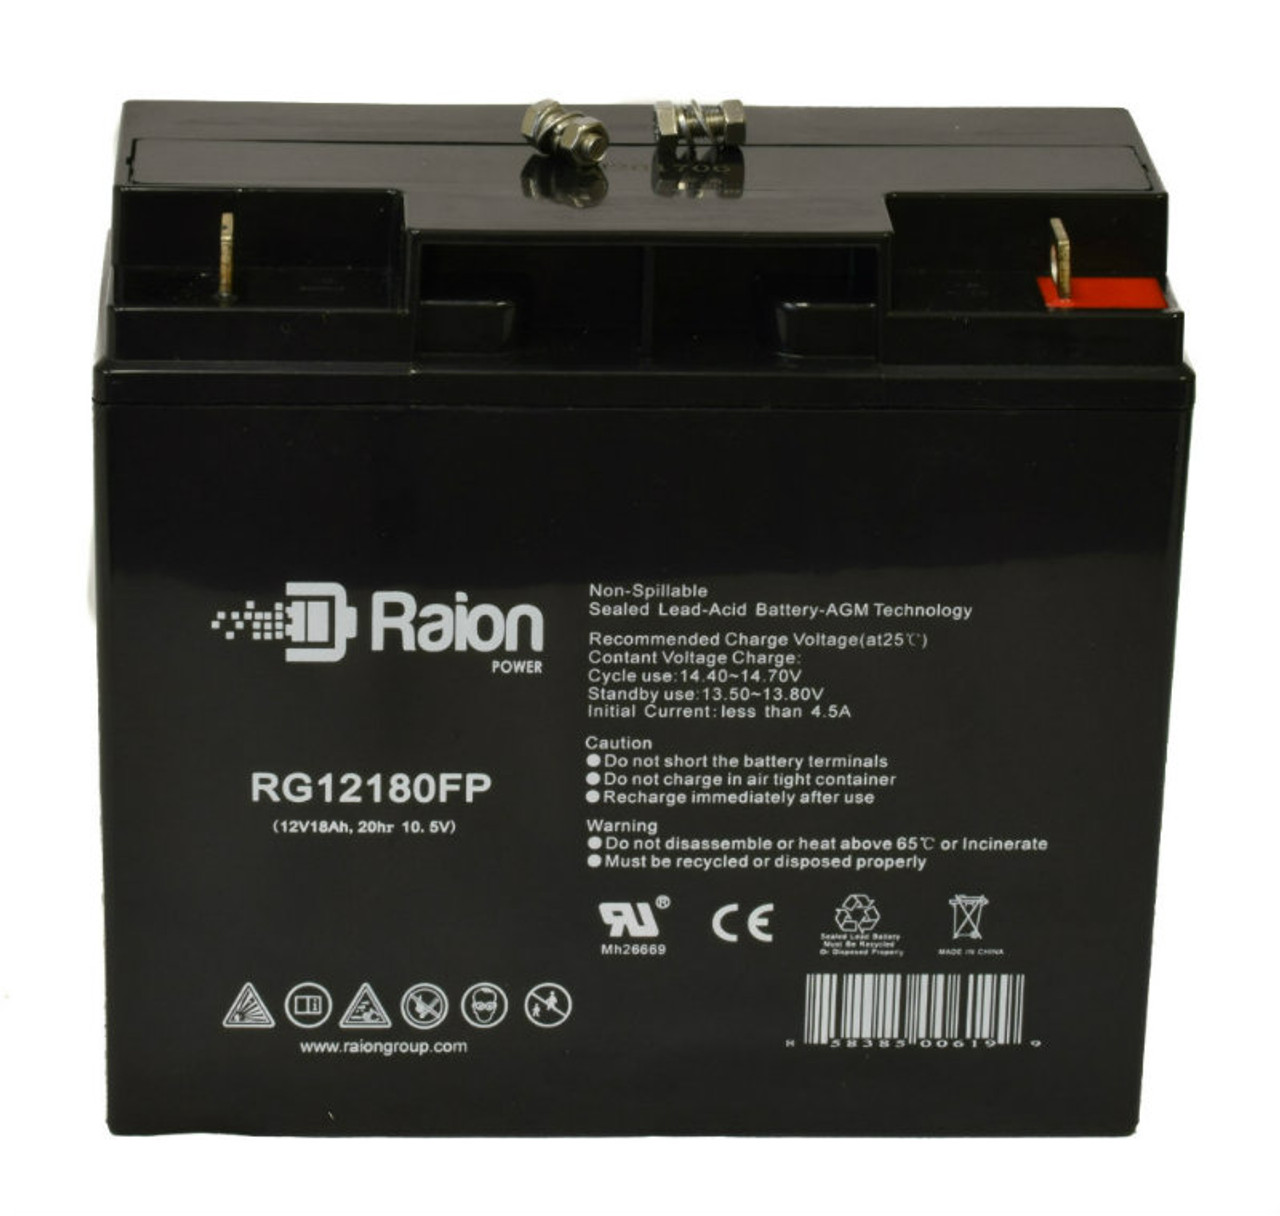 Raion Power RG12180FP 12V 18Ah Lead Acid Battery for Emmo Hornet (48V)